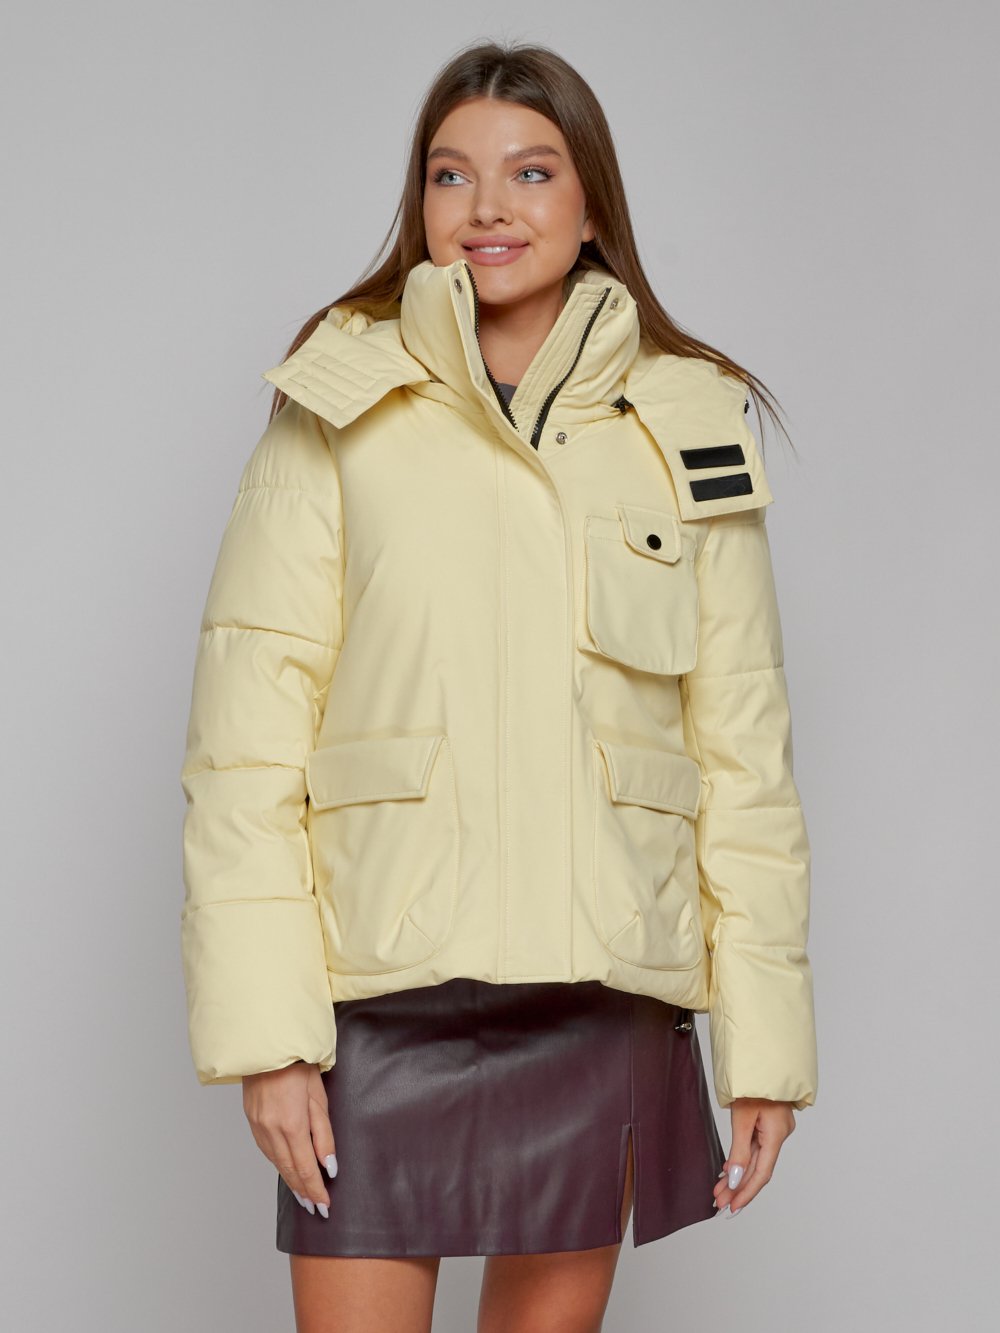 Купить куртку зимнюю оптом от производителя недорого в Москве 52413SJ 1